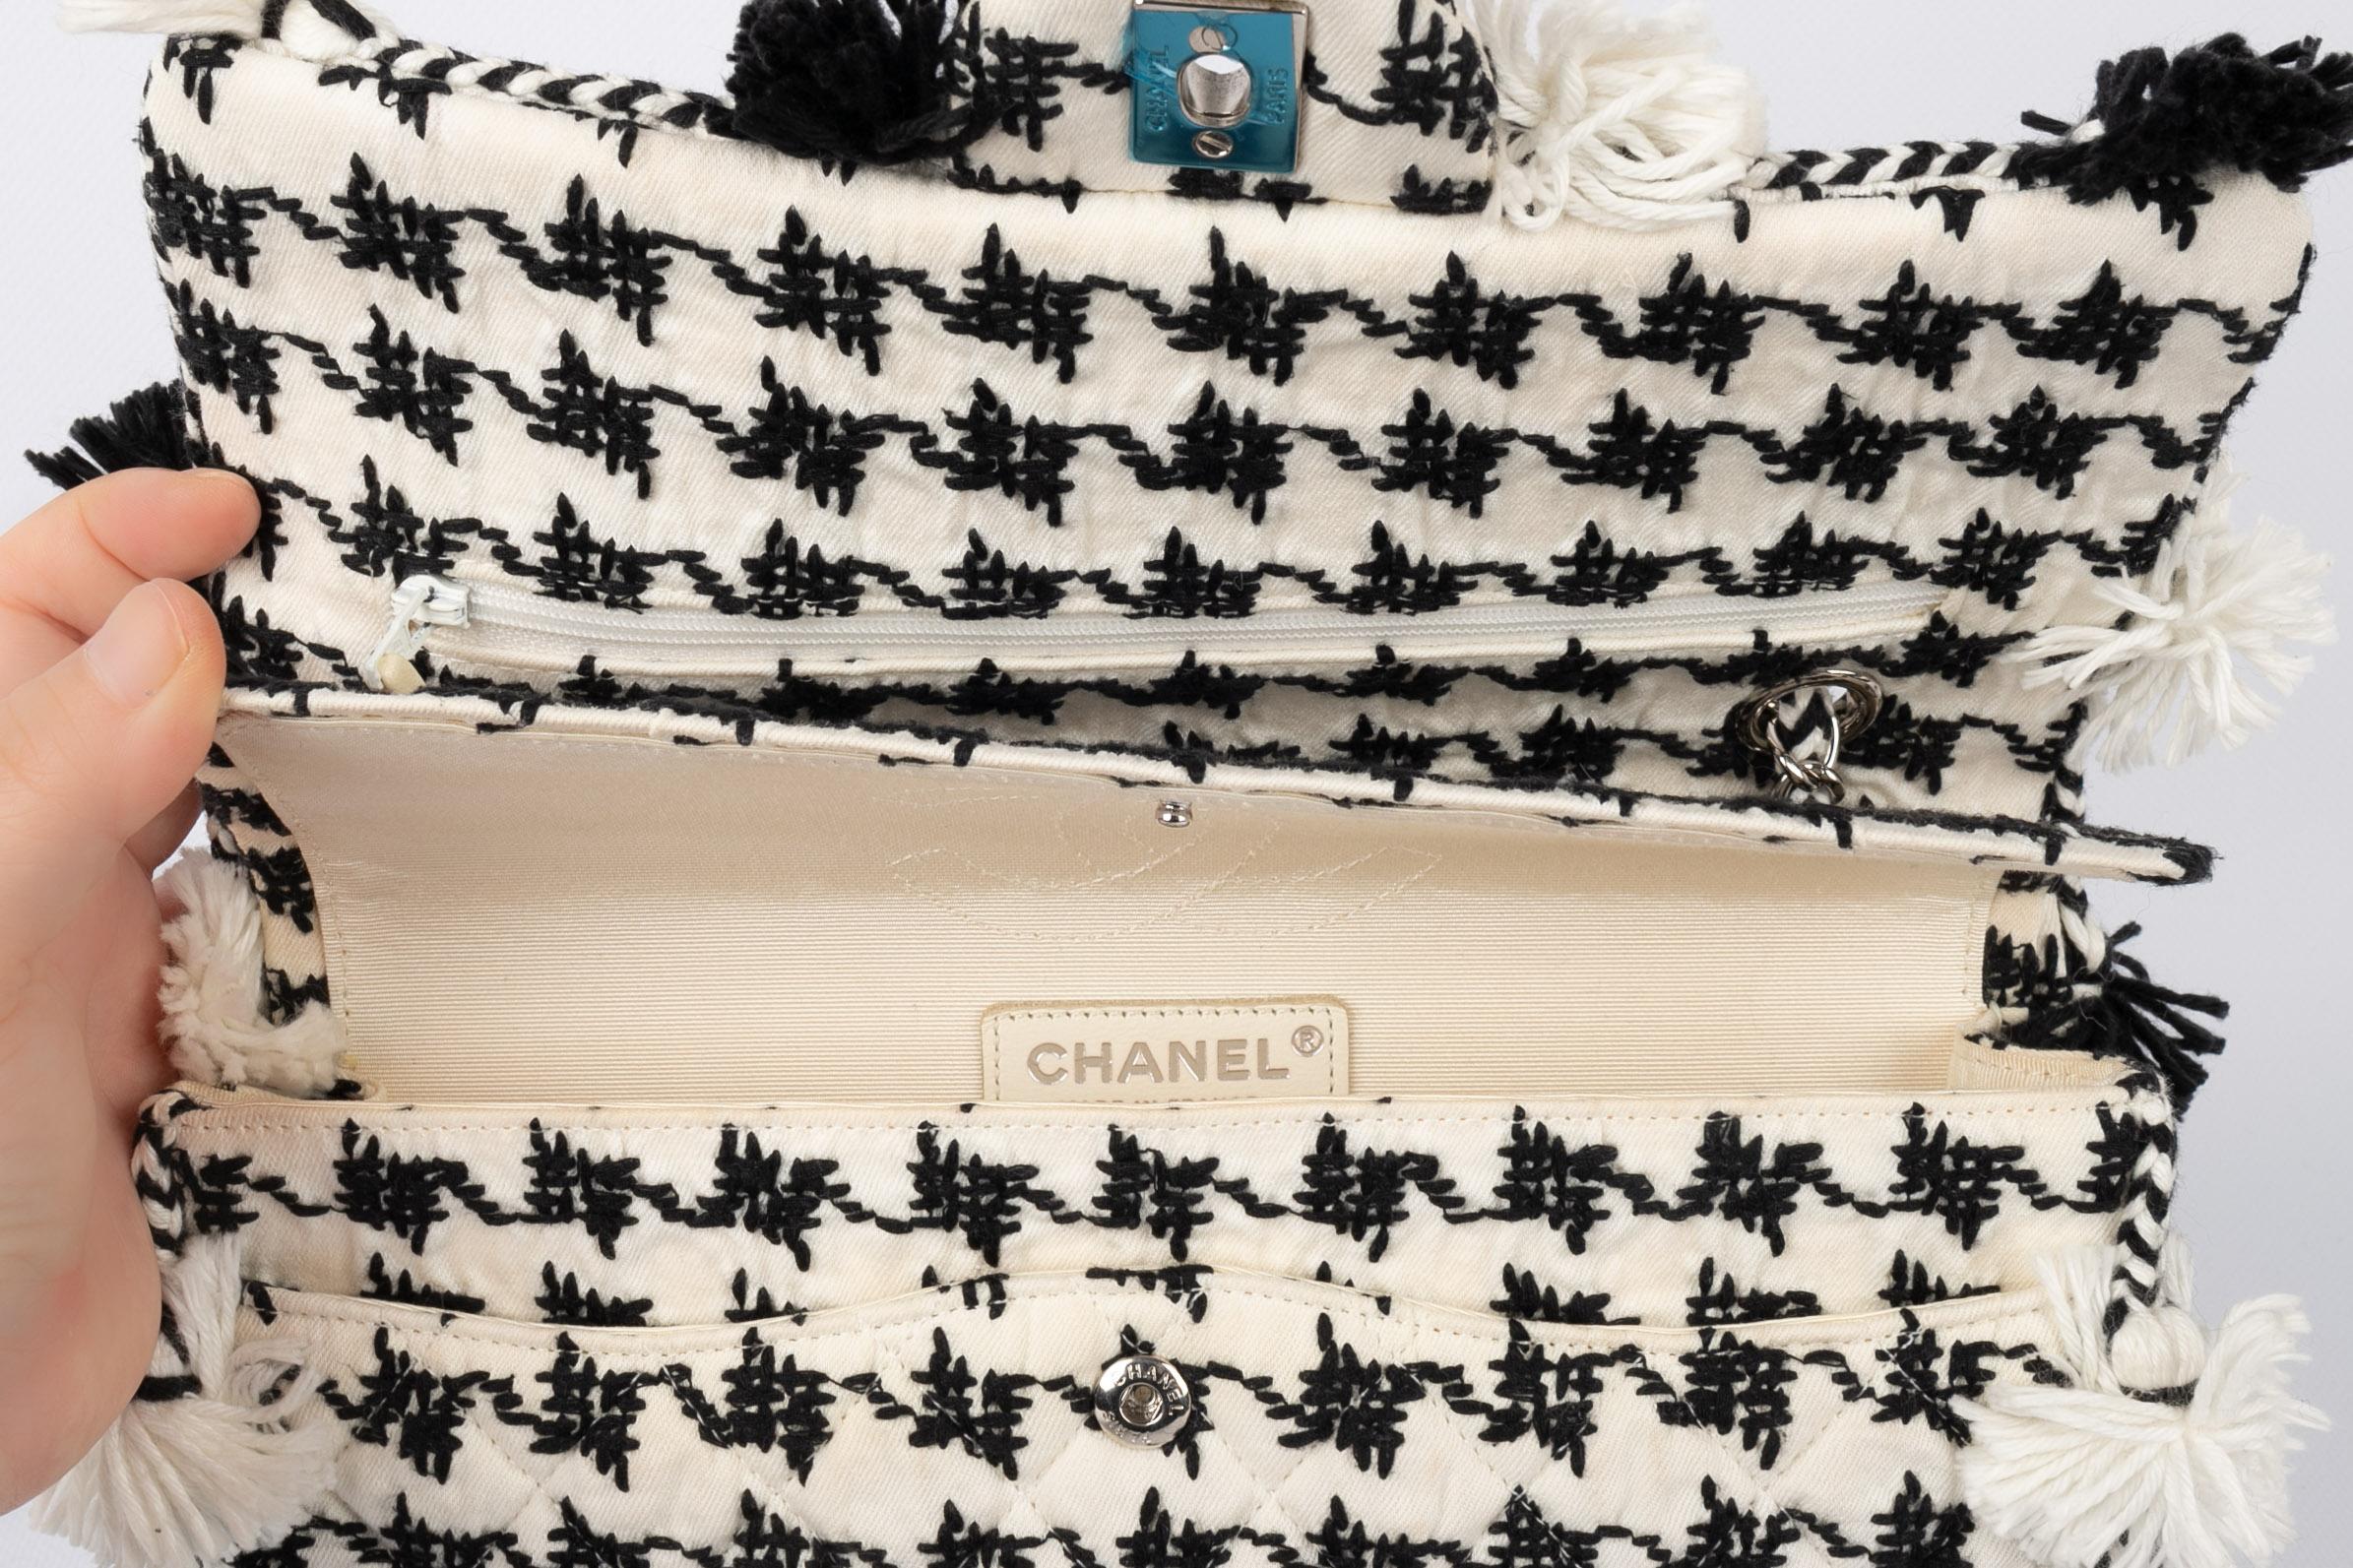 Chanel Timeless bag 2015 Resort 6